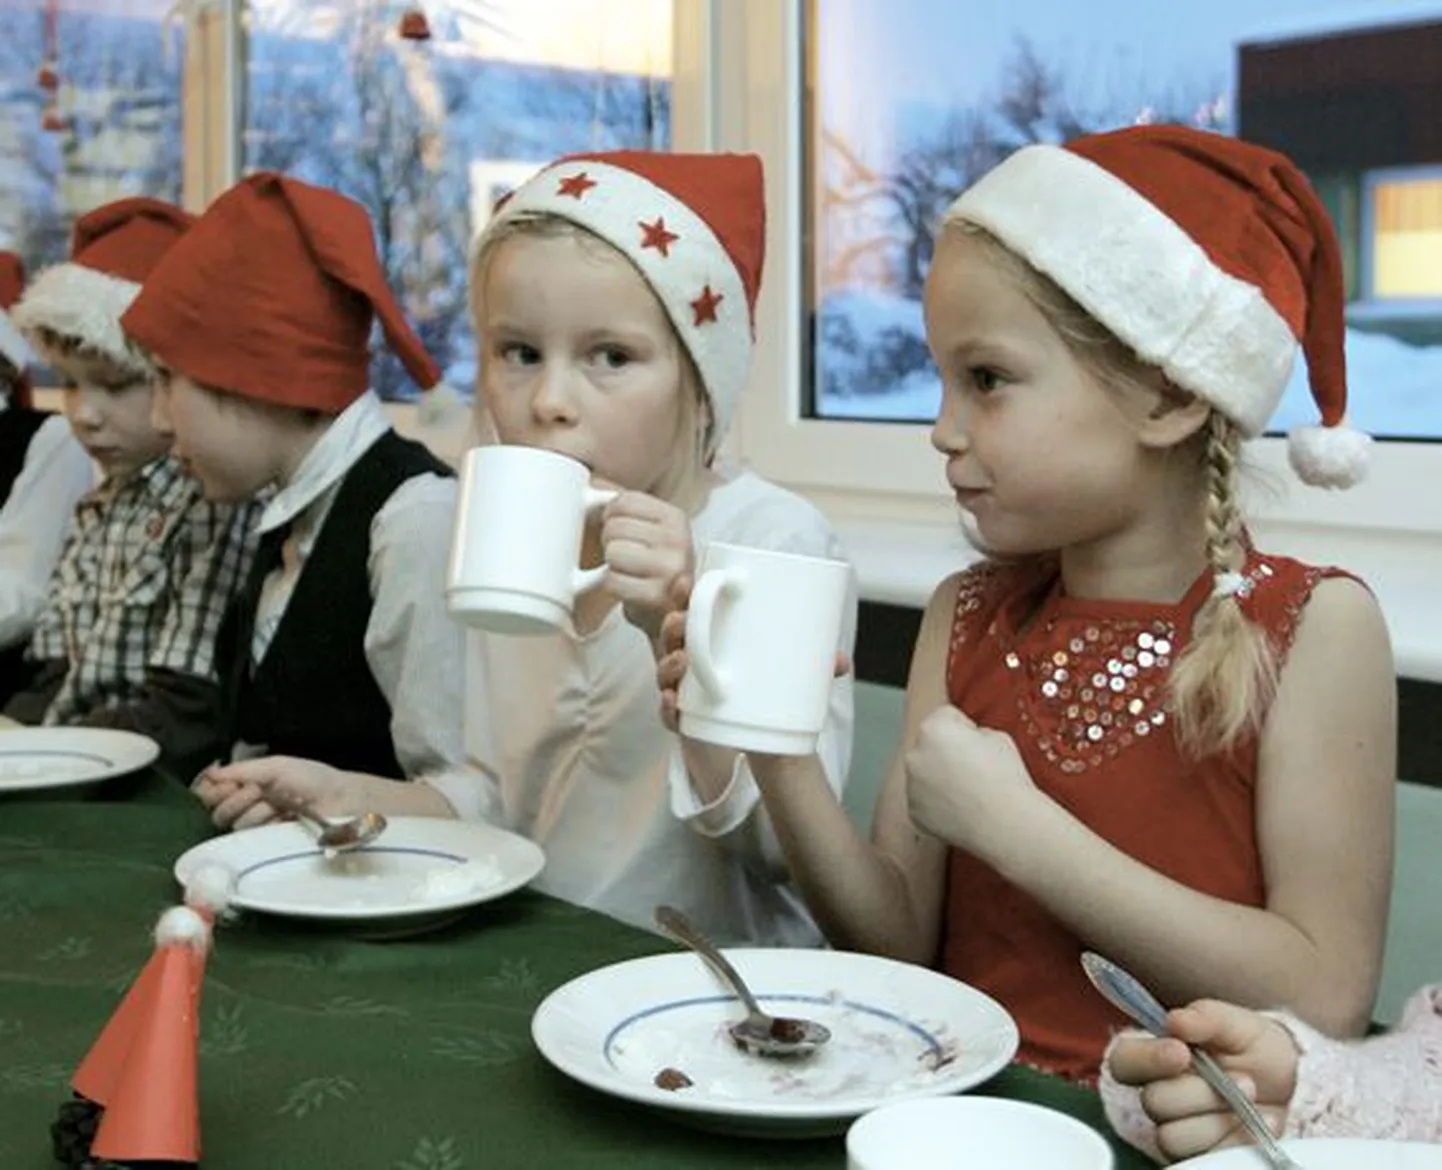 Jõuluhommik algas Uhtna lasteaias ühise pudrusöömisega, et ikka jaksaks mürada. Koos jõuluvanaga tantsud tantsitud, võis teises ruumis tutvust teha ka sõbraliku jõulusokuga.